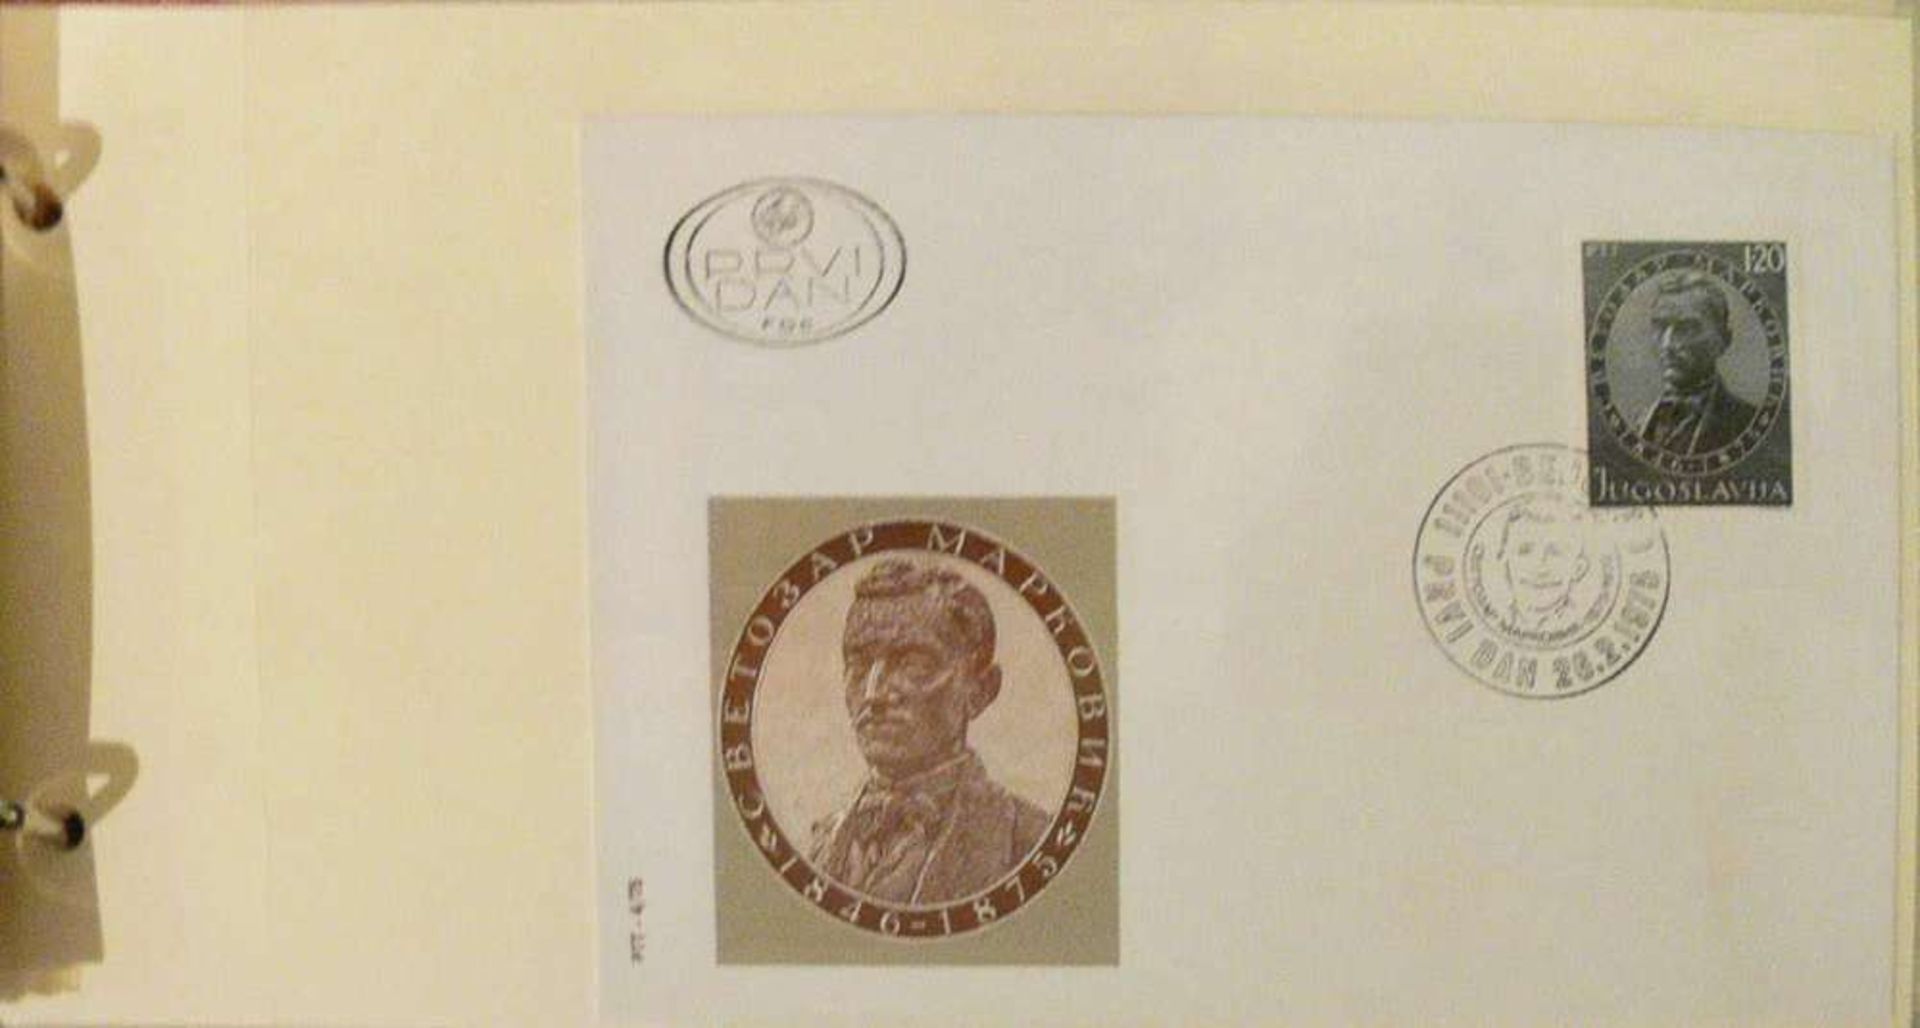 Reserve: 5 EUR        prall gefülltes Ersttagsbriefealbum, mit ETB von Jugoslawien - Image 2 of 2